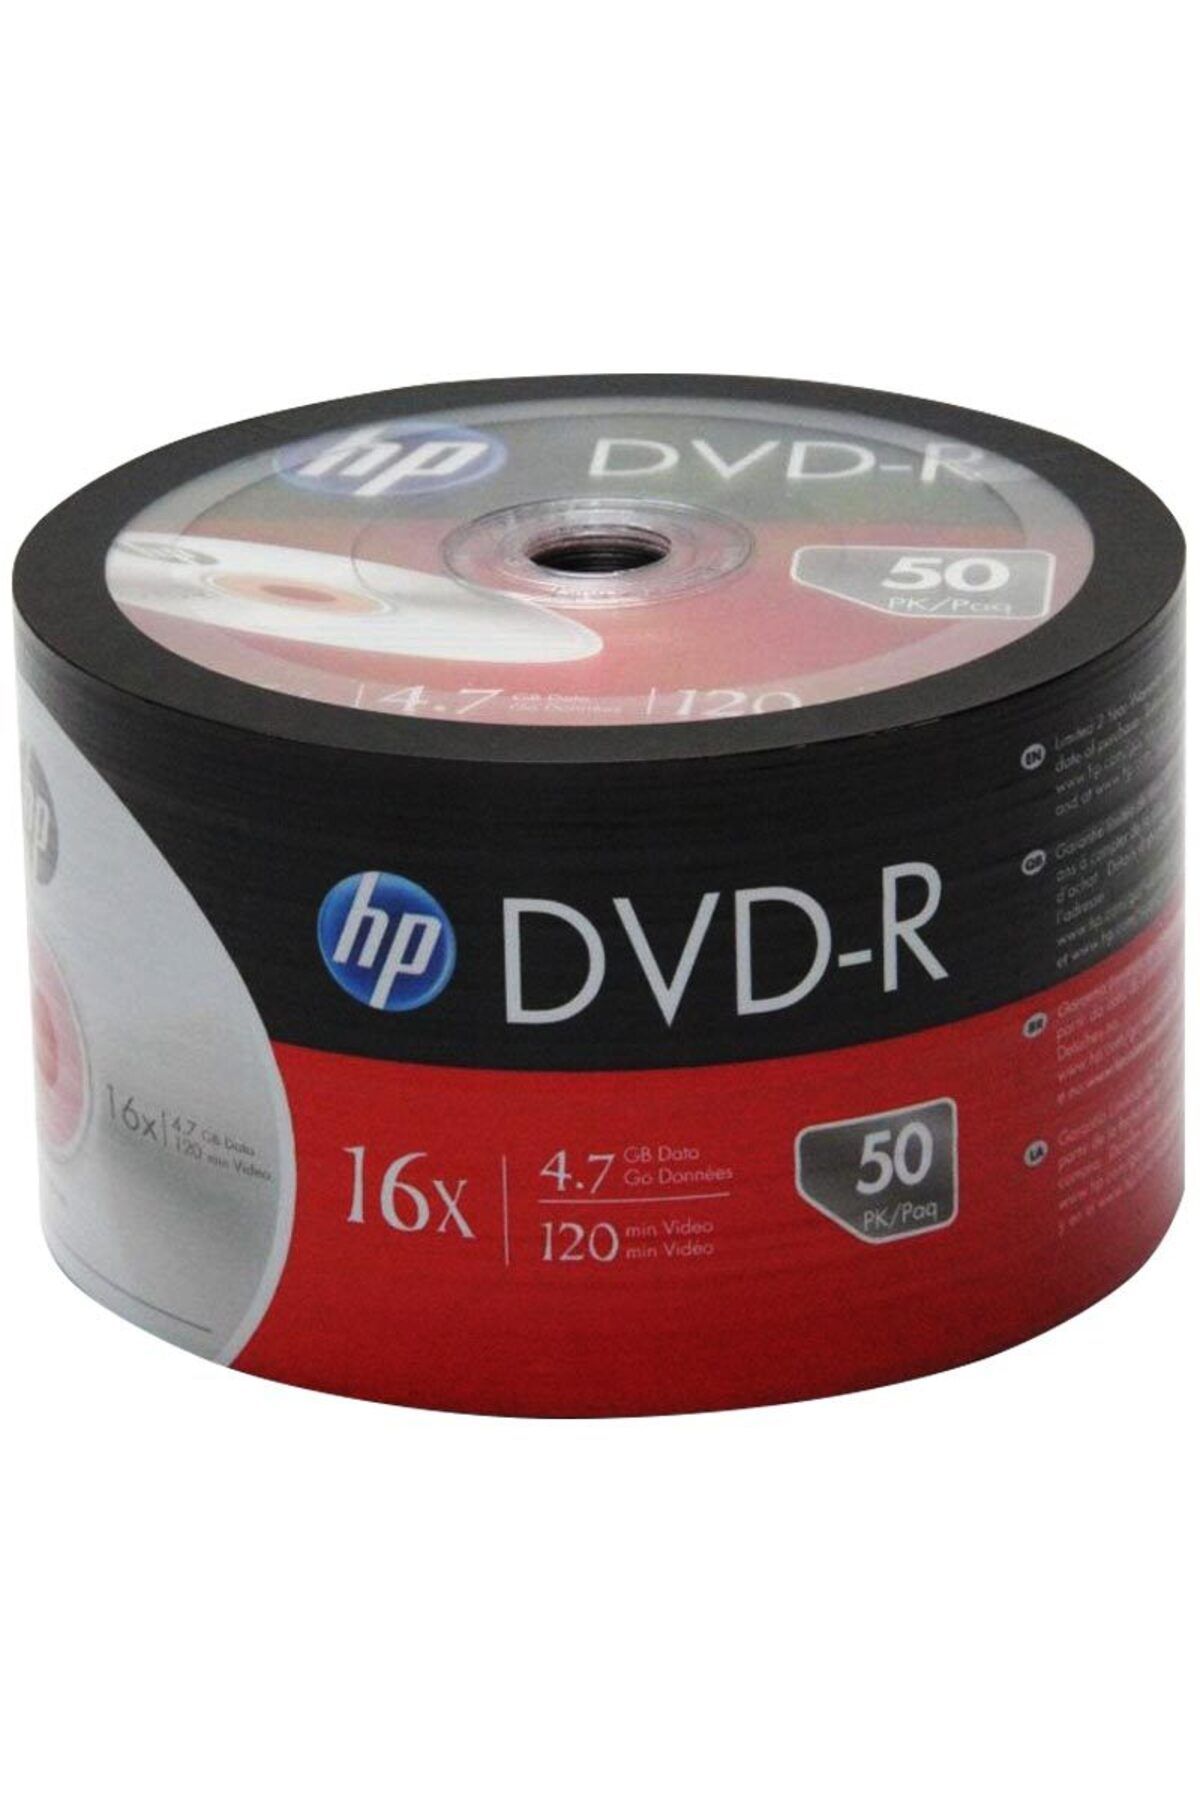 Hatiç Store HP DME00070-3 DVD-R 4.7 GB 120 MİN 16X 50Lİ PAKET FİYAT (81)